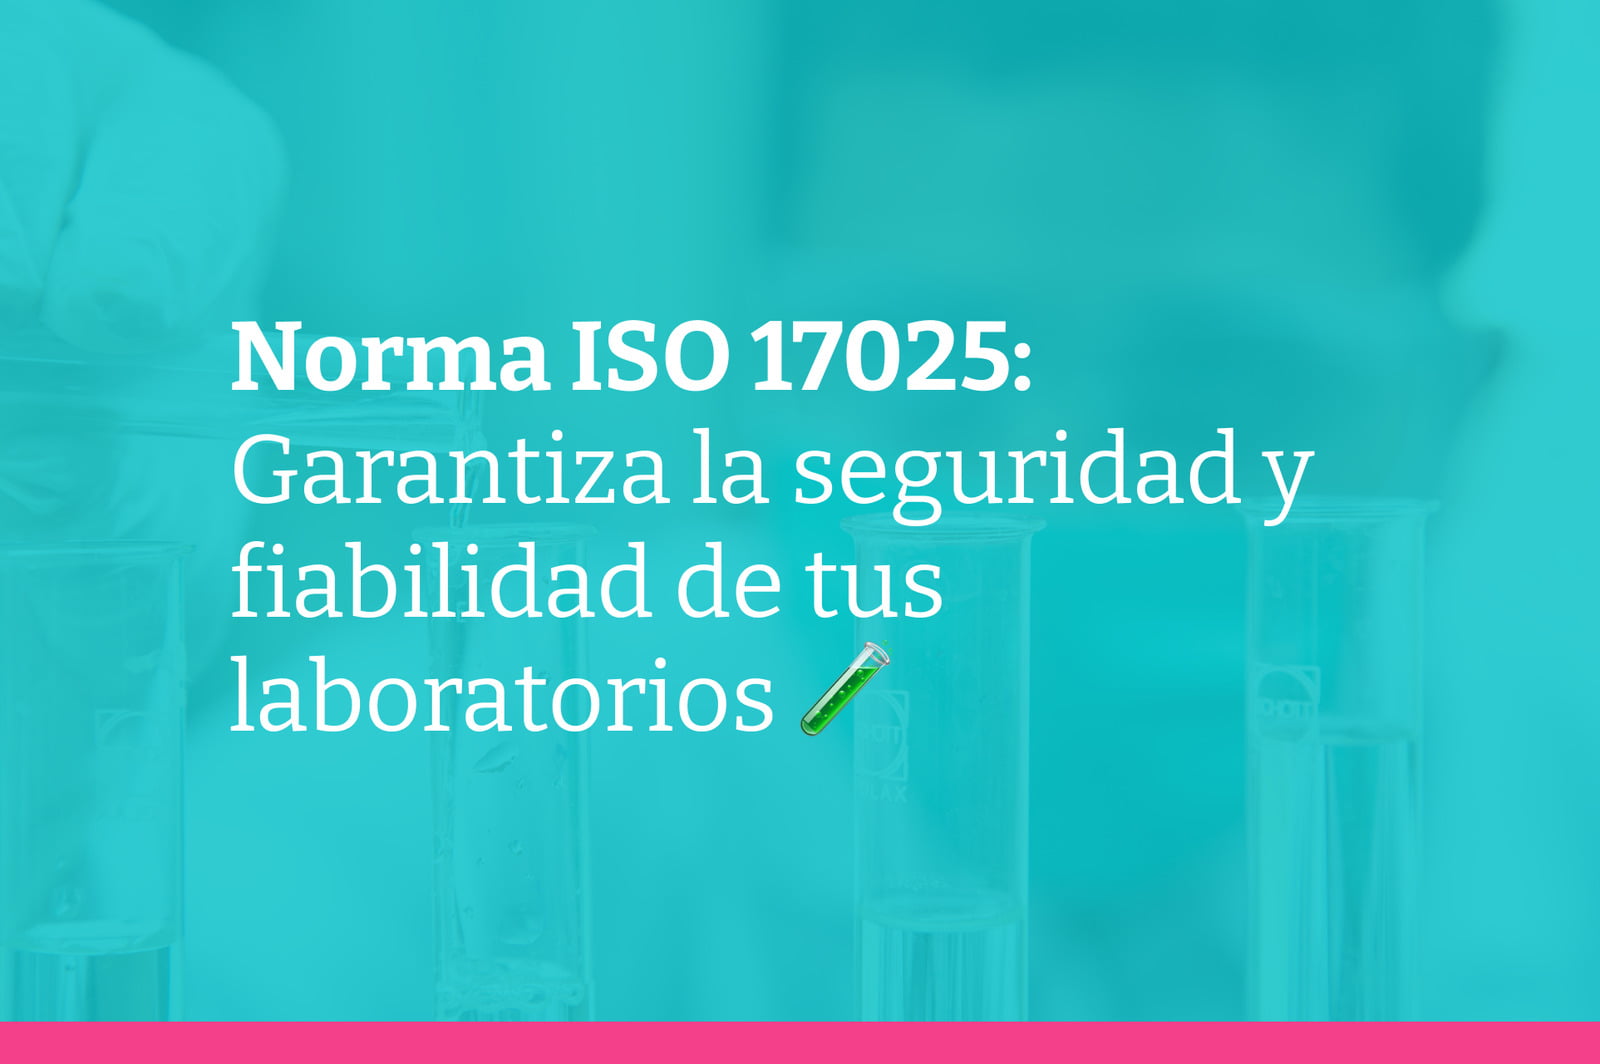 Capacitación en la norma ISO 17025 para laboratorios seguros y confiables